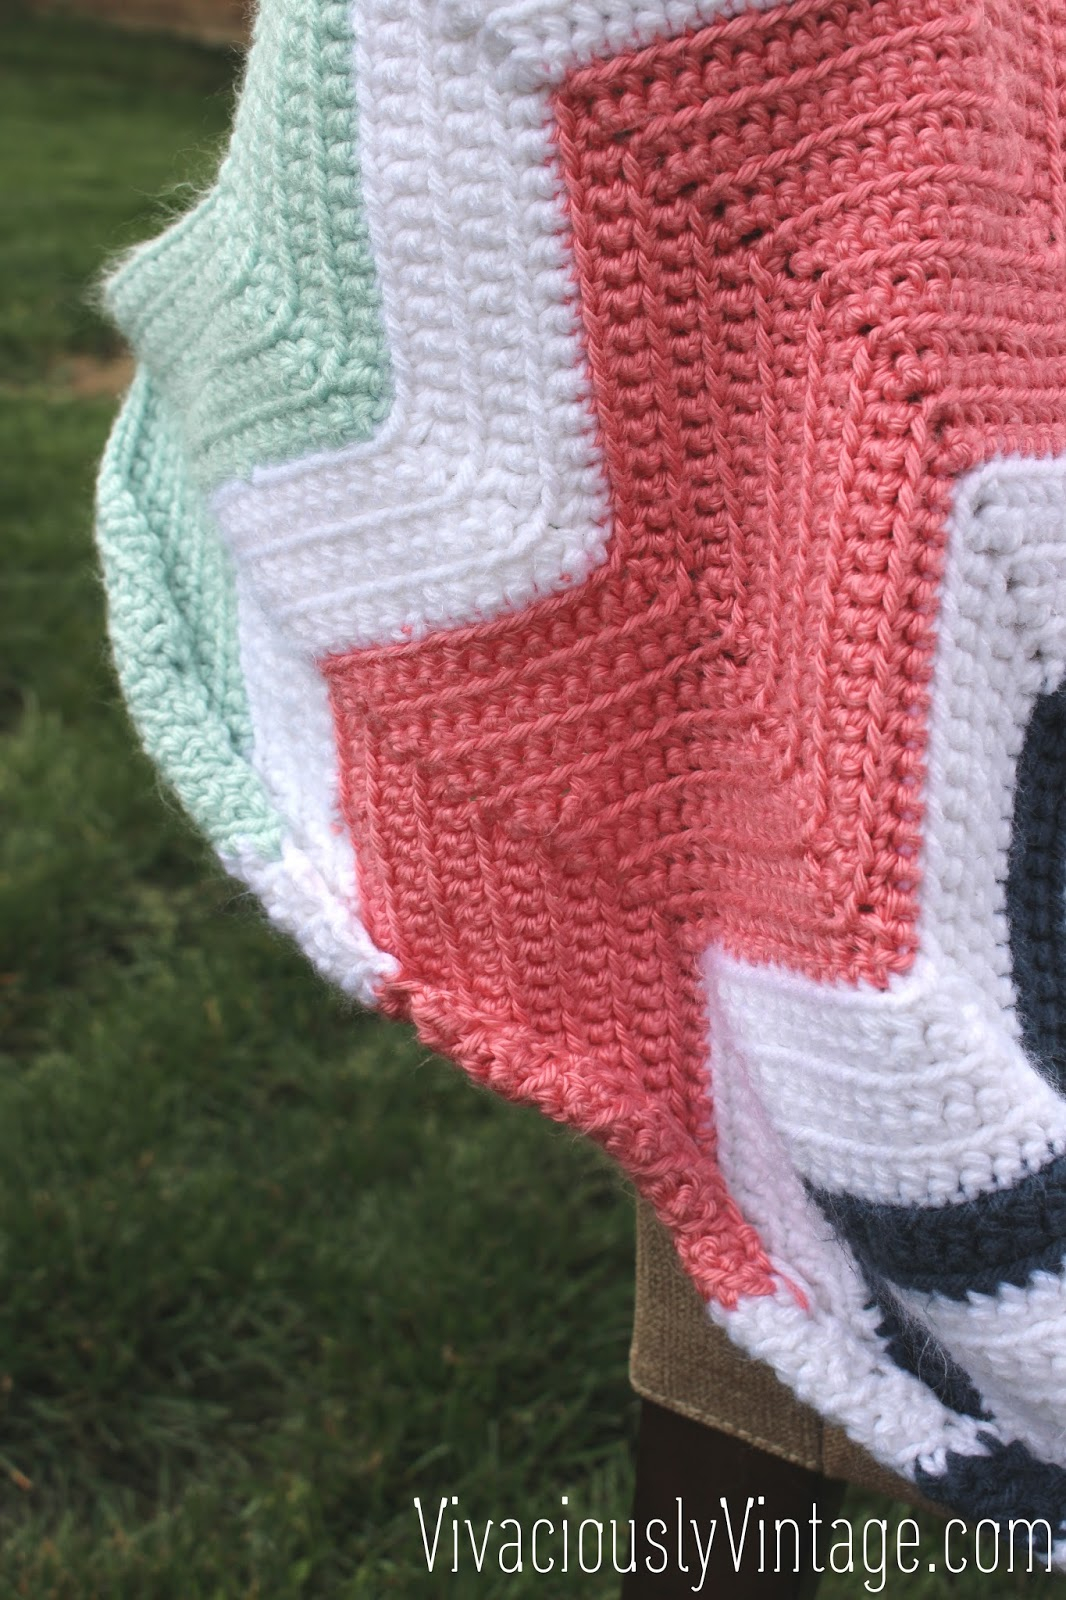 Easy Chevron Crochet Pattern Ansley Designs Easy Beginner Chevron Crochet Ba Blanket Only One